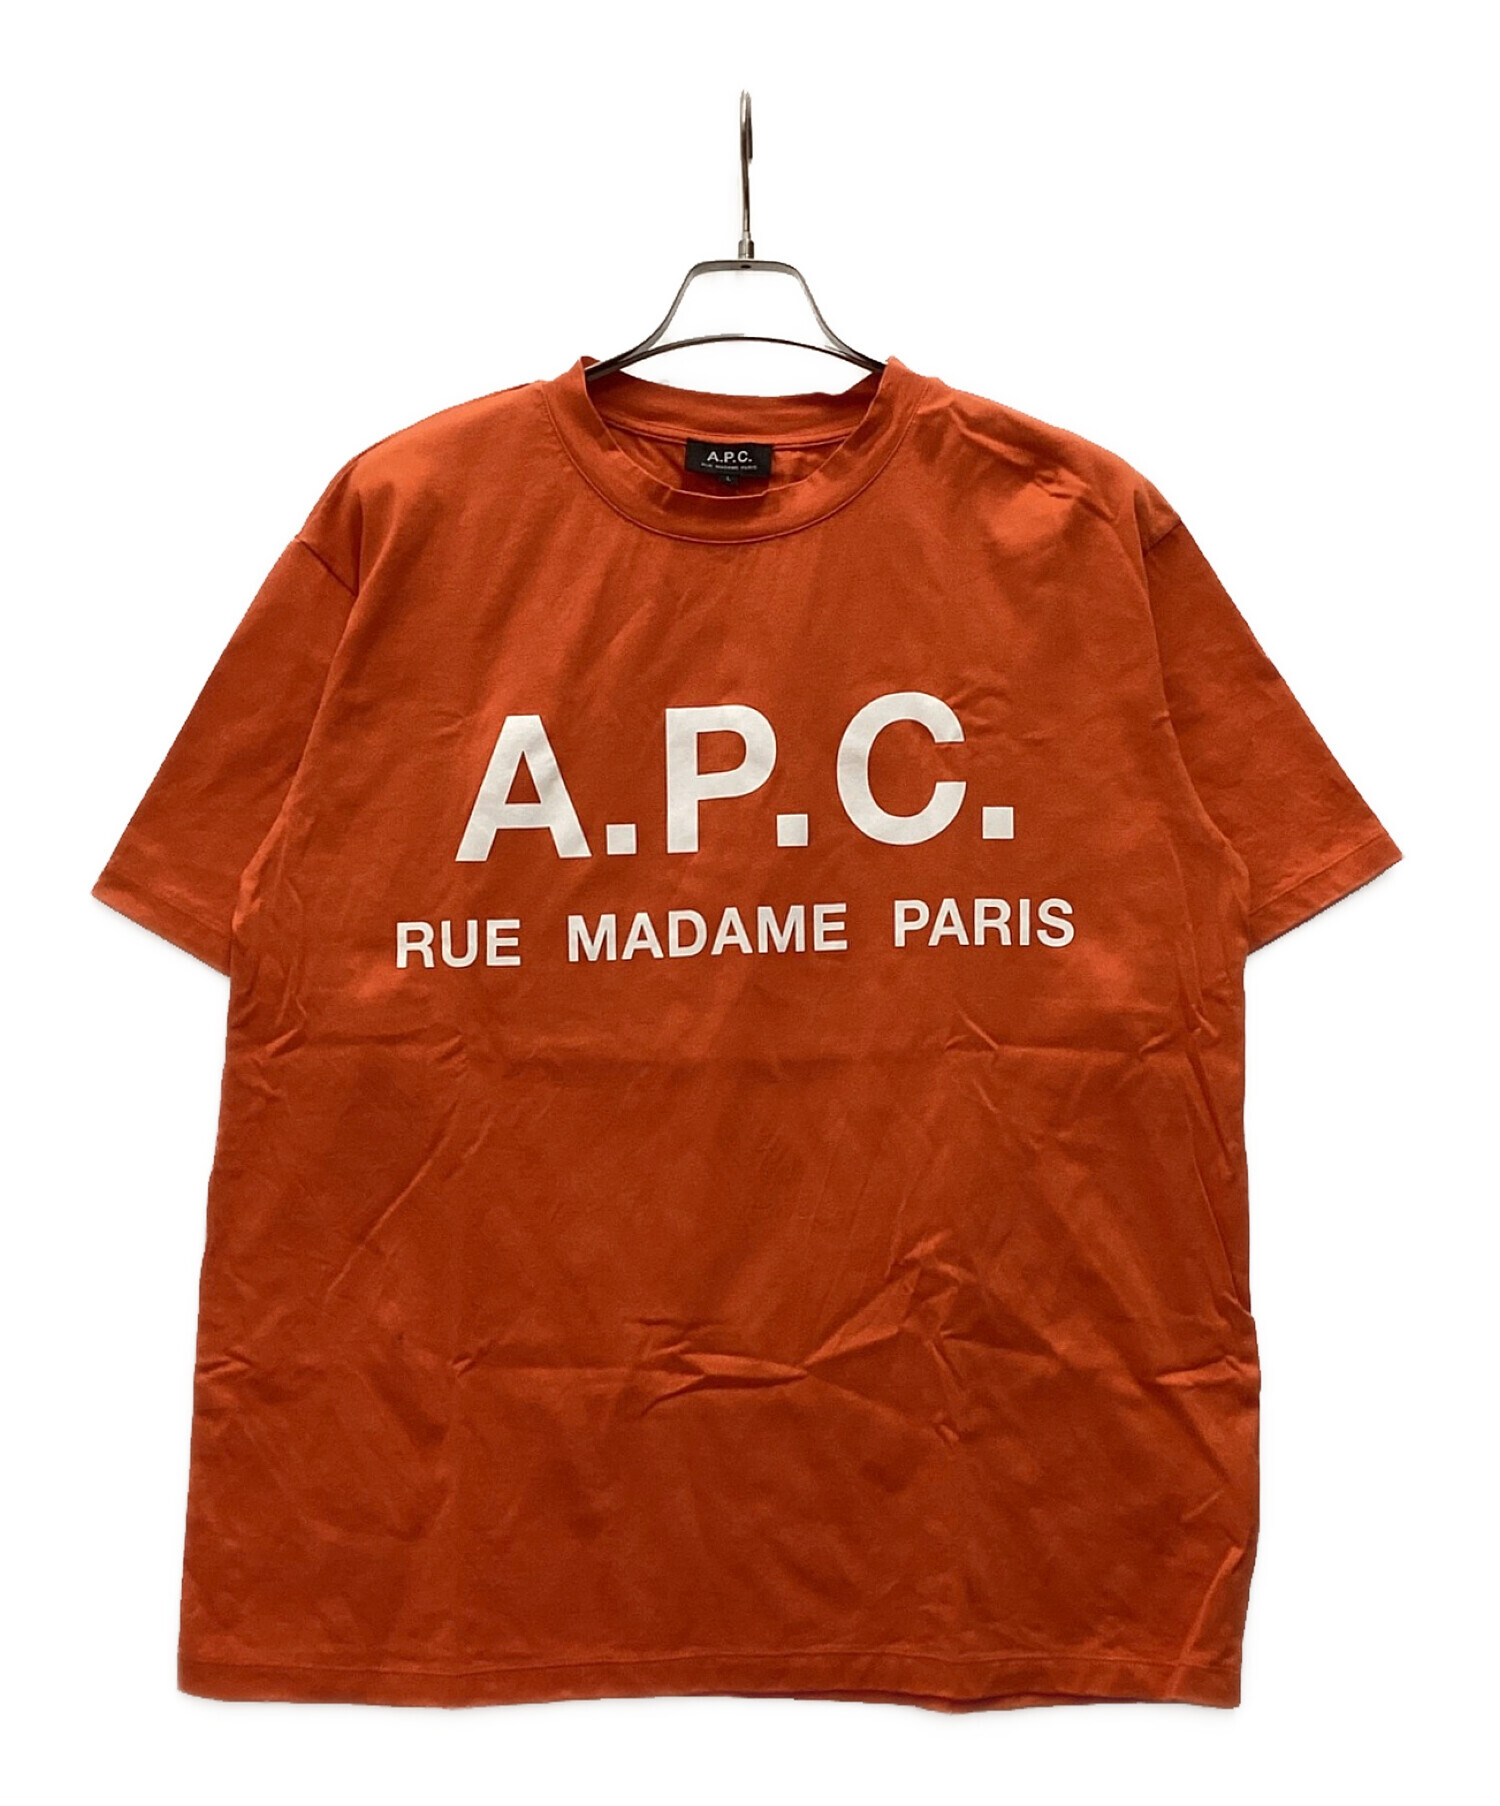 A.P.C. (アー・ペー・セー) EDIFICE (エディフィス) ロゴTシャツ オレンジ サイズ:L